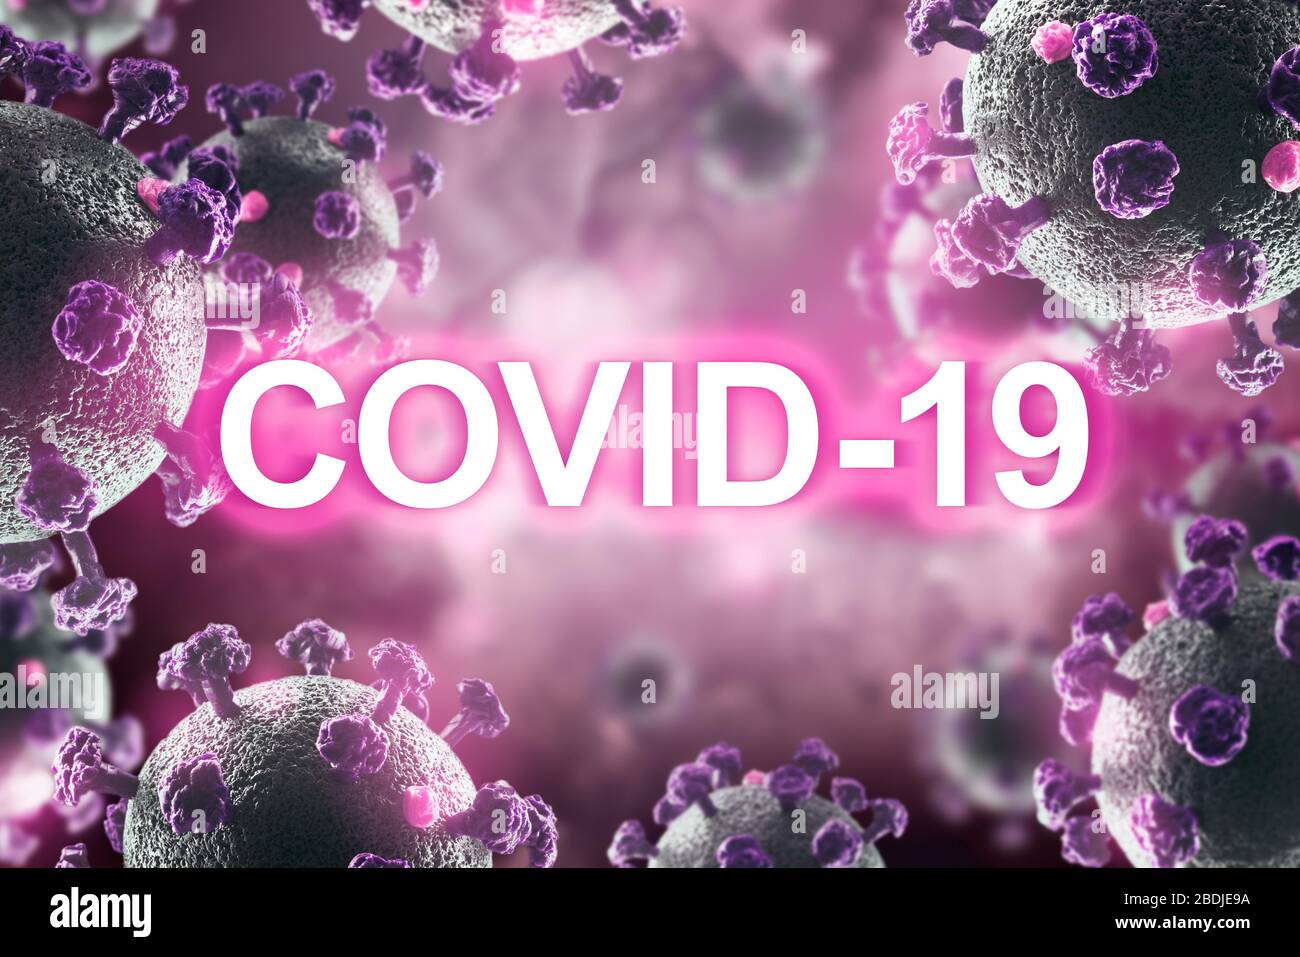 Pandemic Covid-19. Worldwide SARS-CoV-2 coronavirus Stock Photo